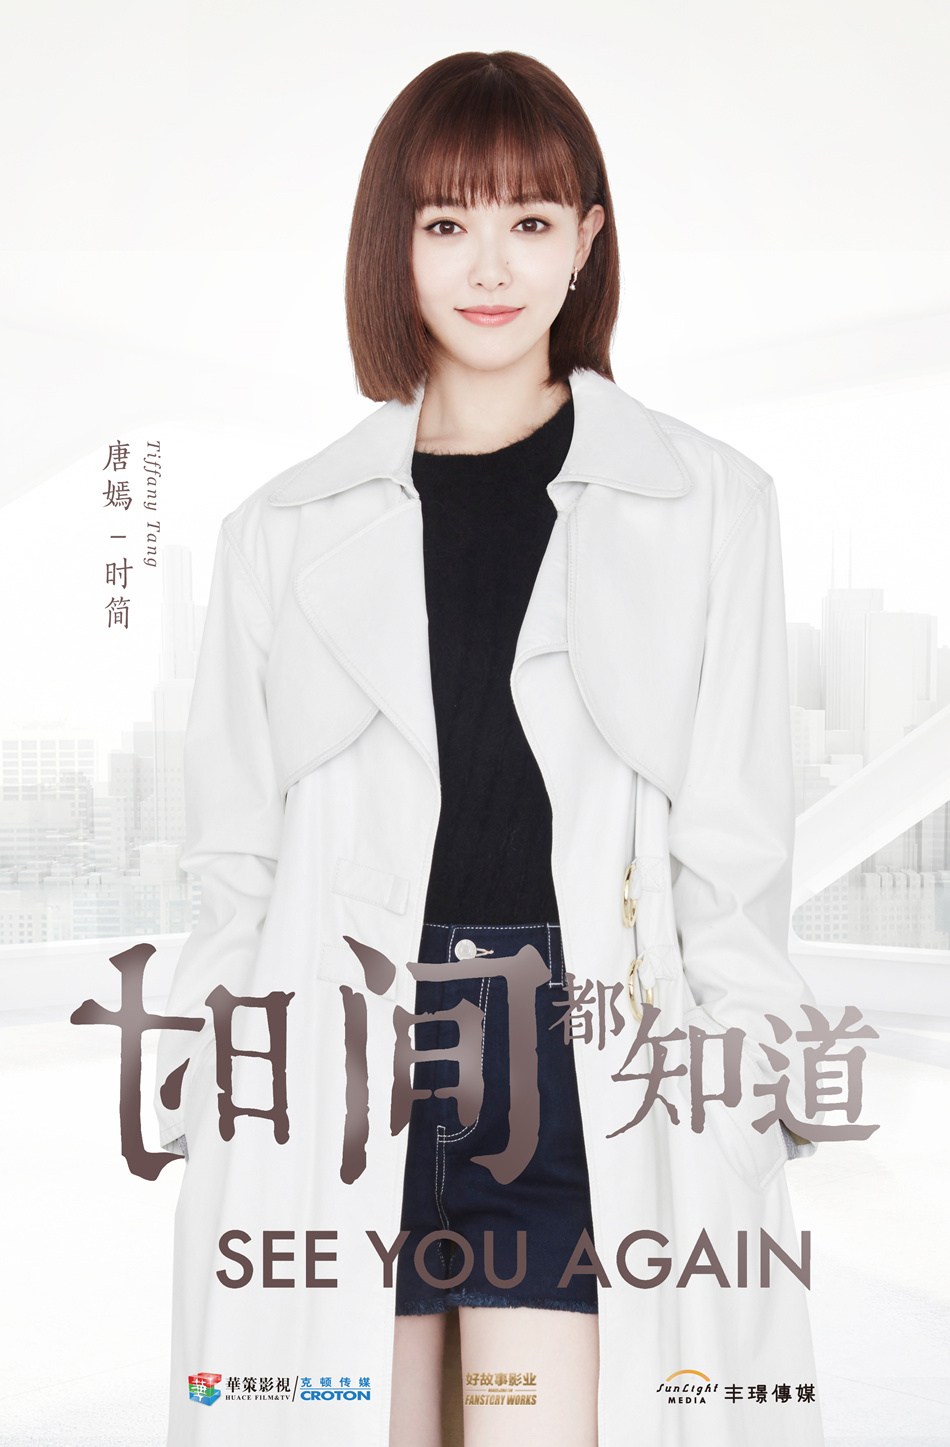 中国女優ティファニータン 交際発表もスマートな中国俳優ルオジンのプロフィールと若き日の初出演ドラマ